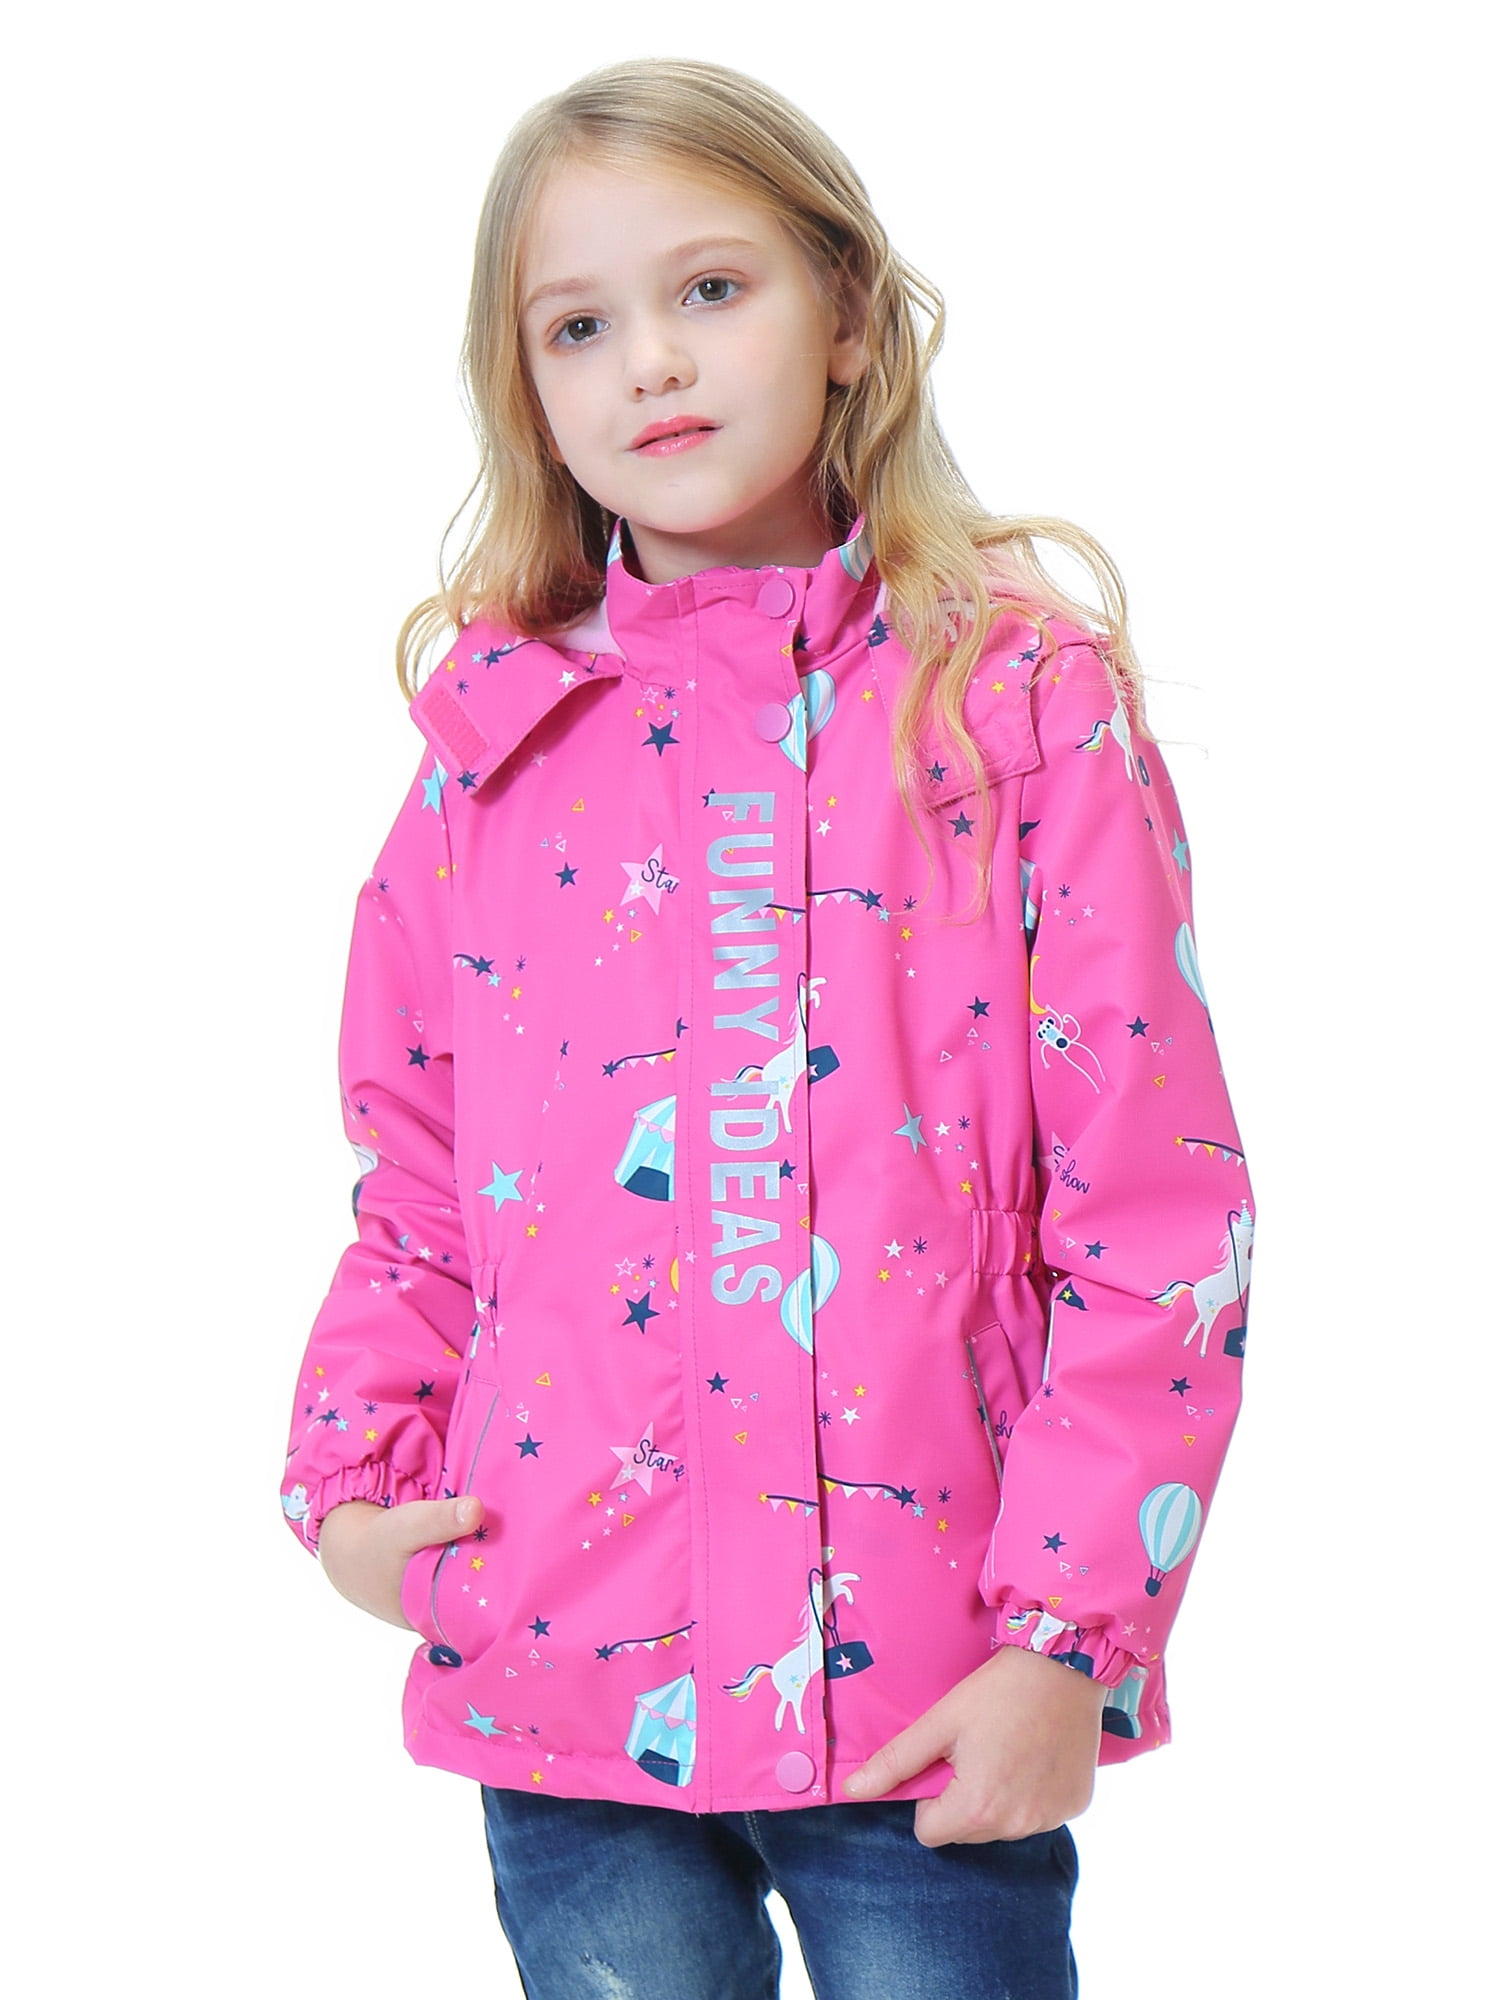 DILIBA Girls' Rain Jackets Lightweight Waterproof Hooded Windbreakers Winter Warm for Kids' Coat 4-12 Years 